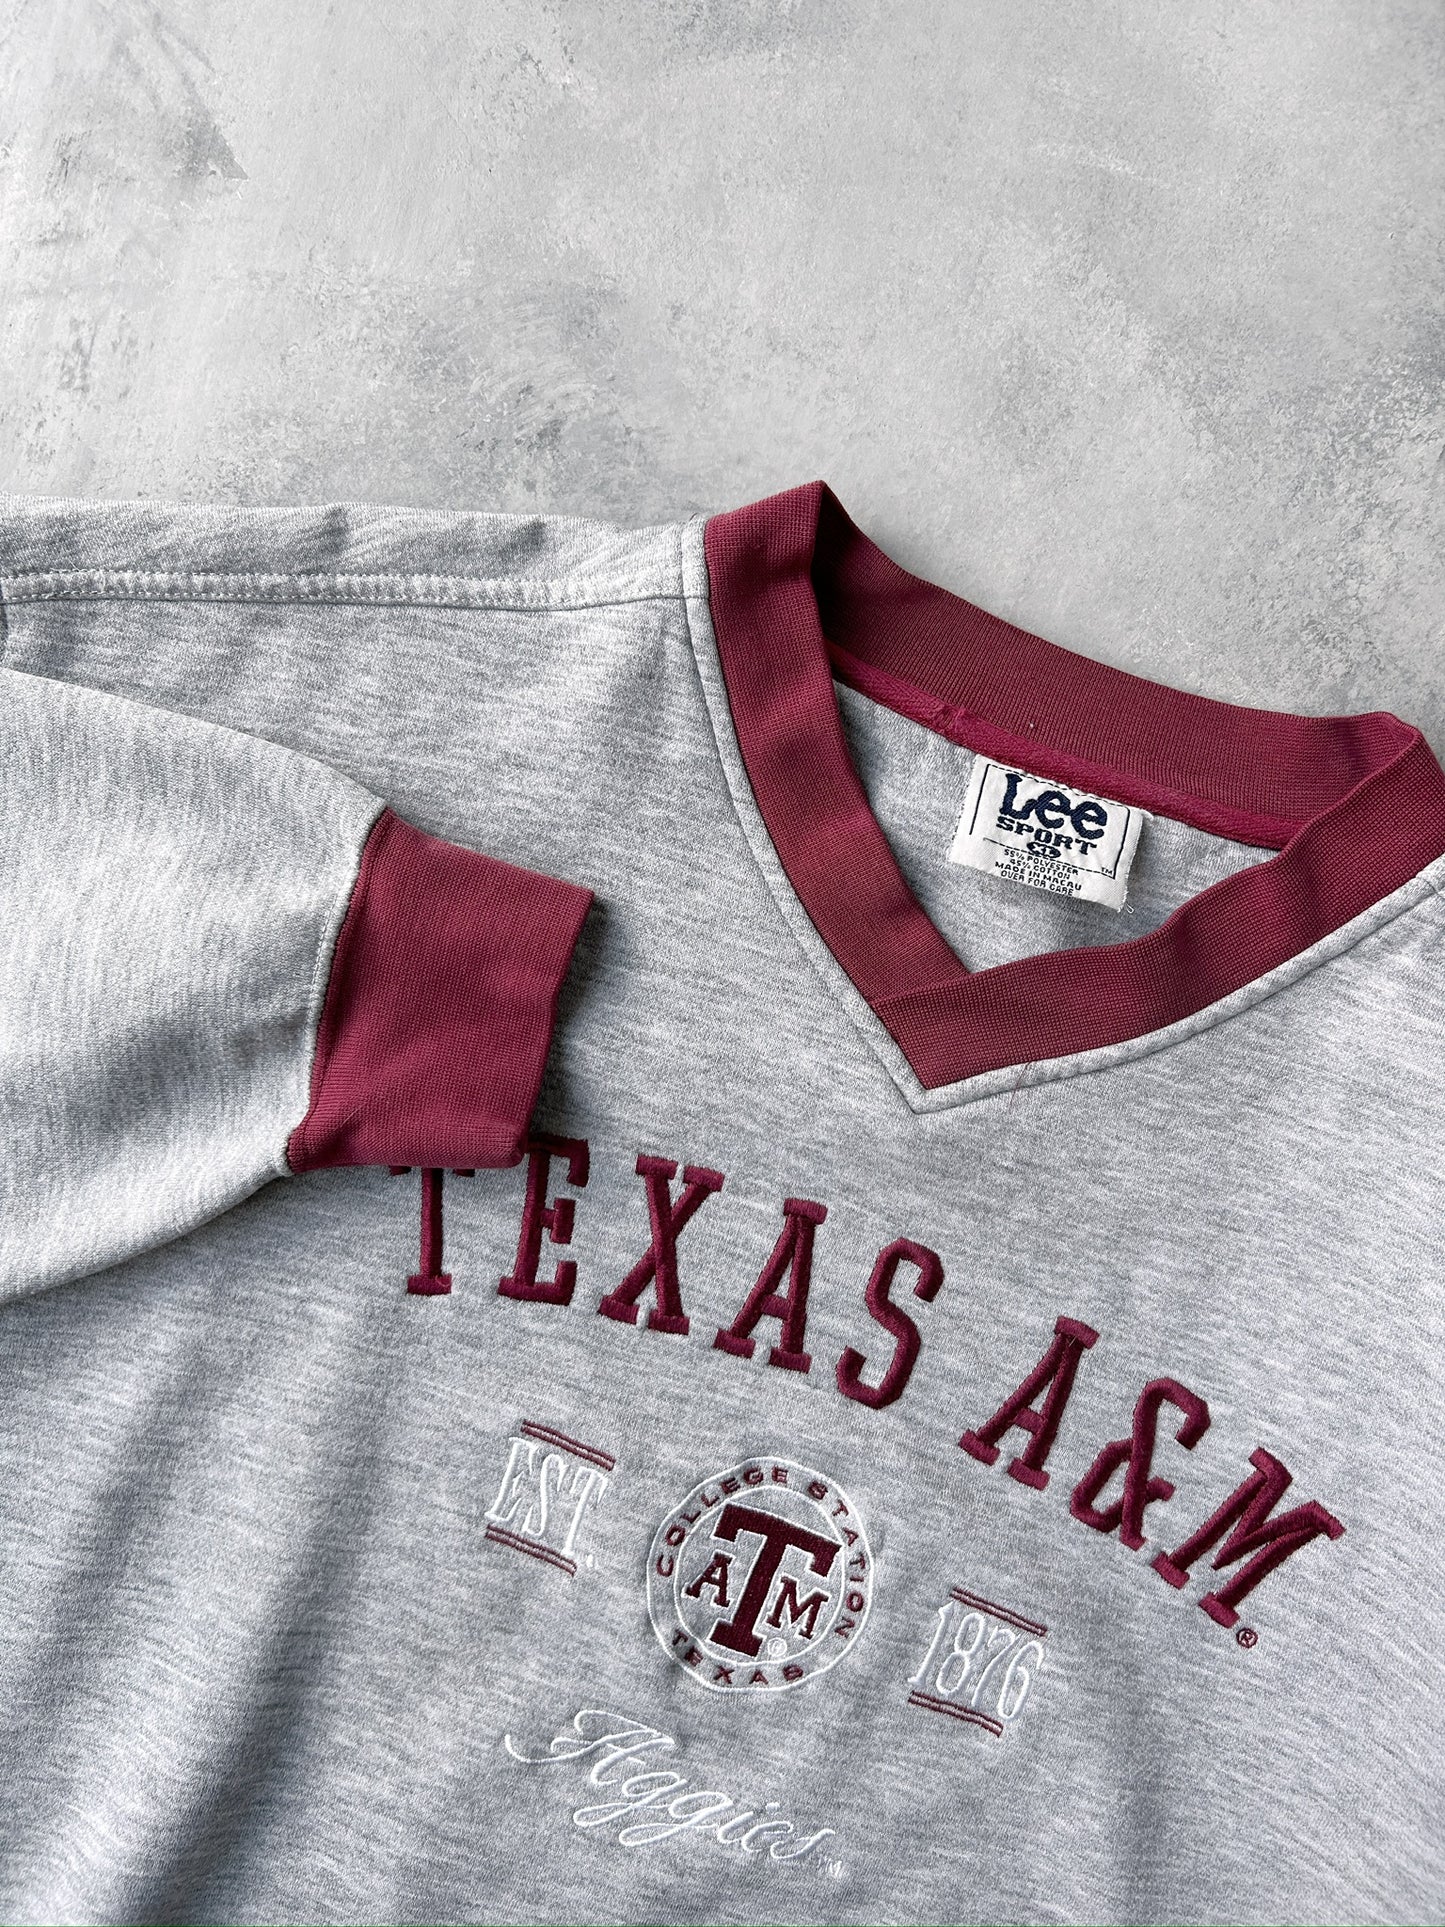 Texas A&M Aggies Sweatshirt 90's - XL